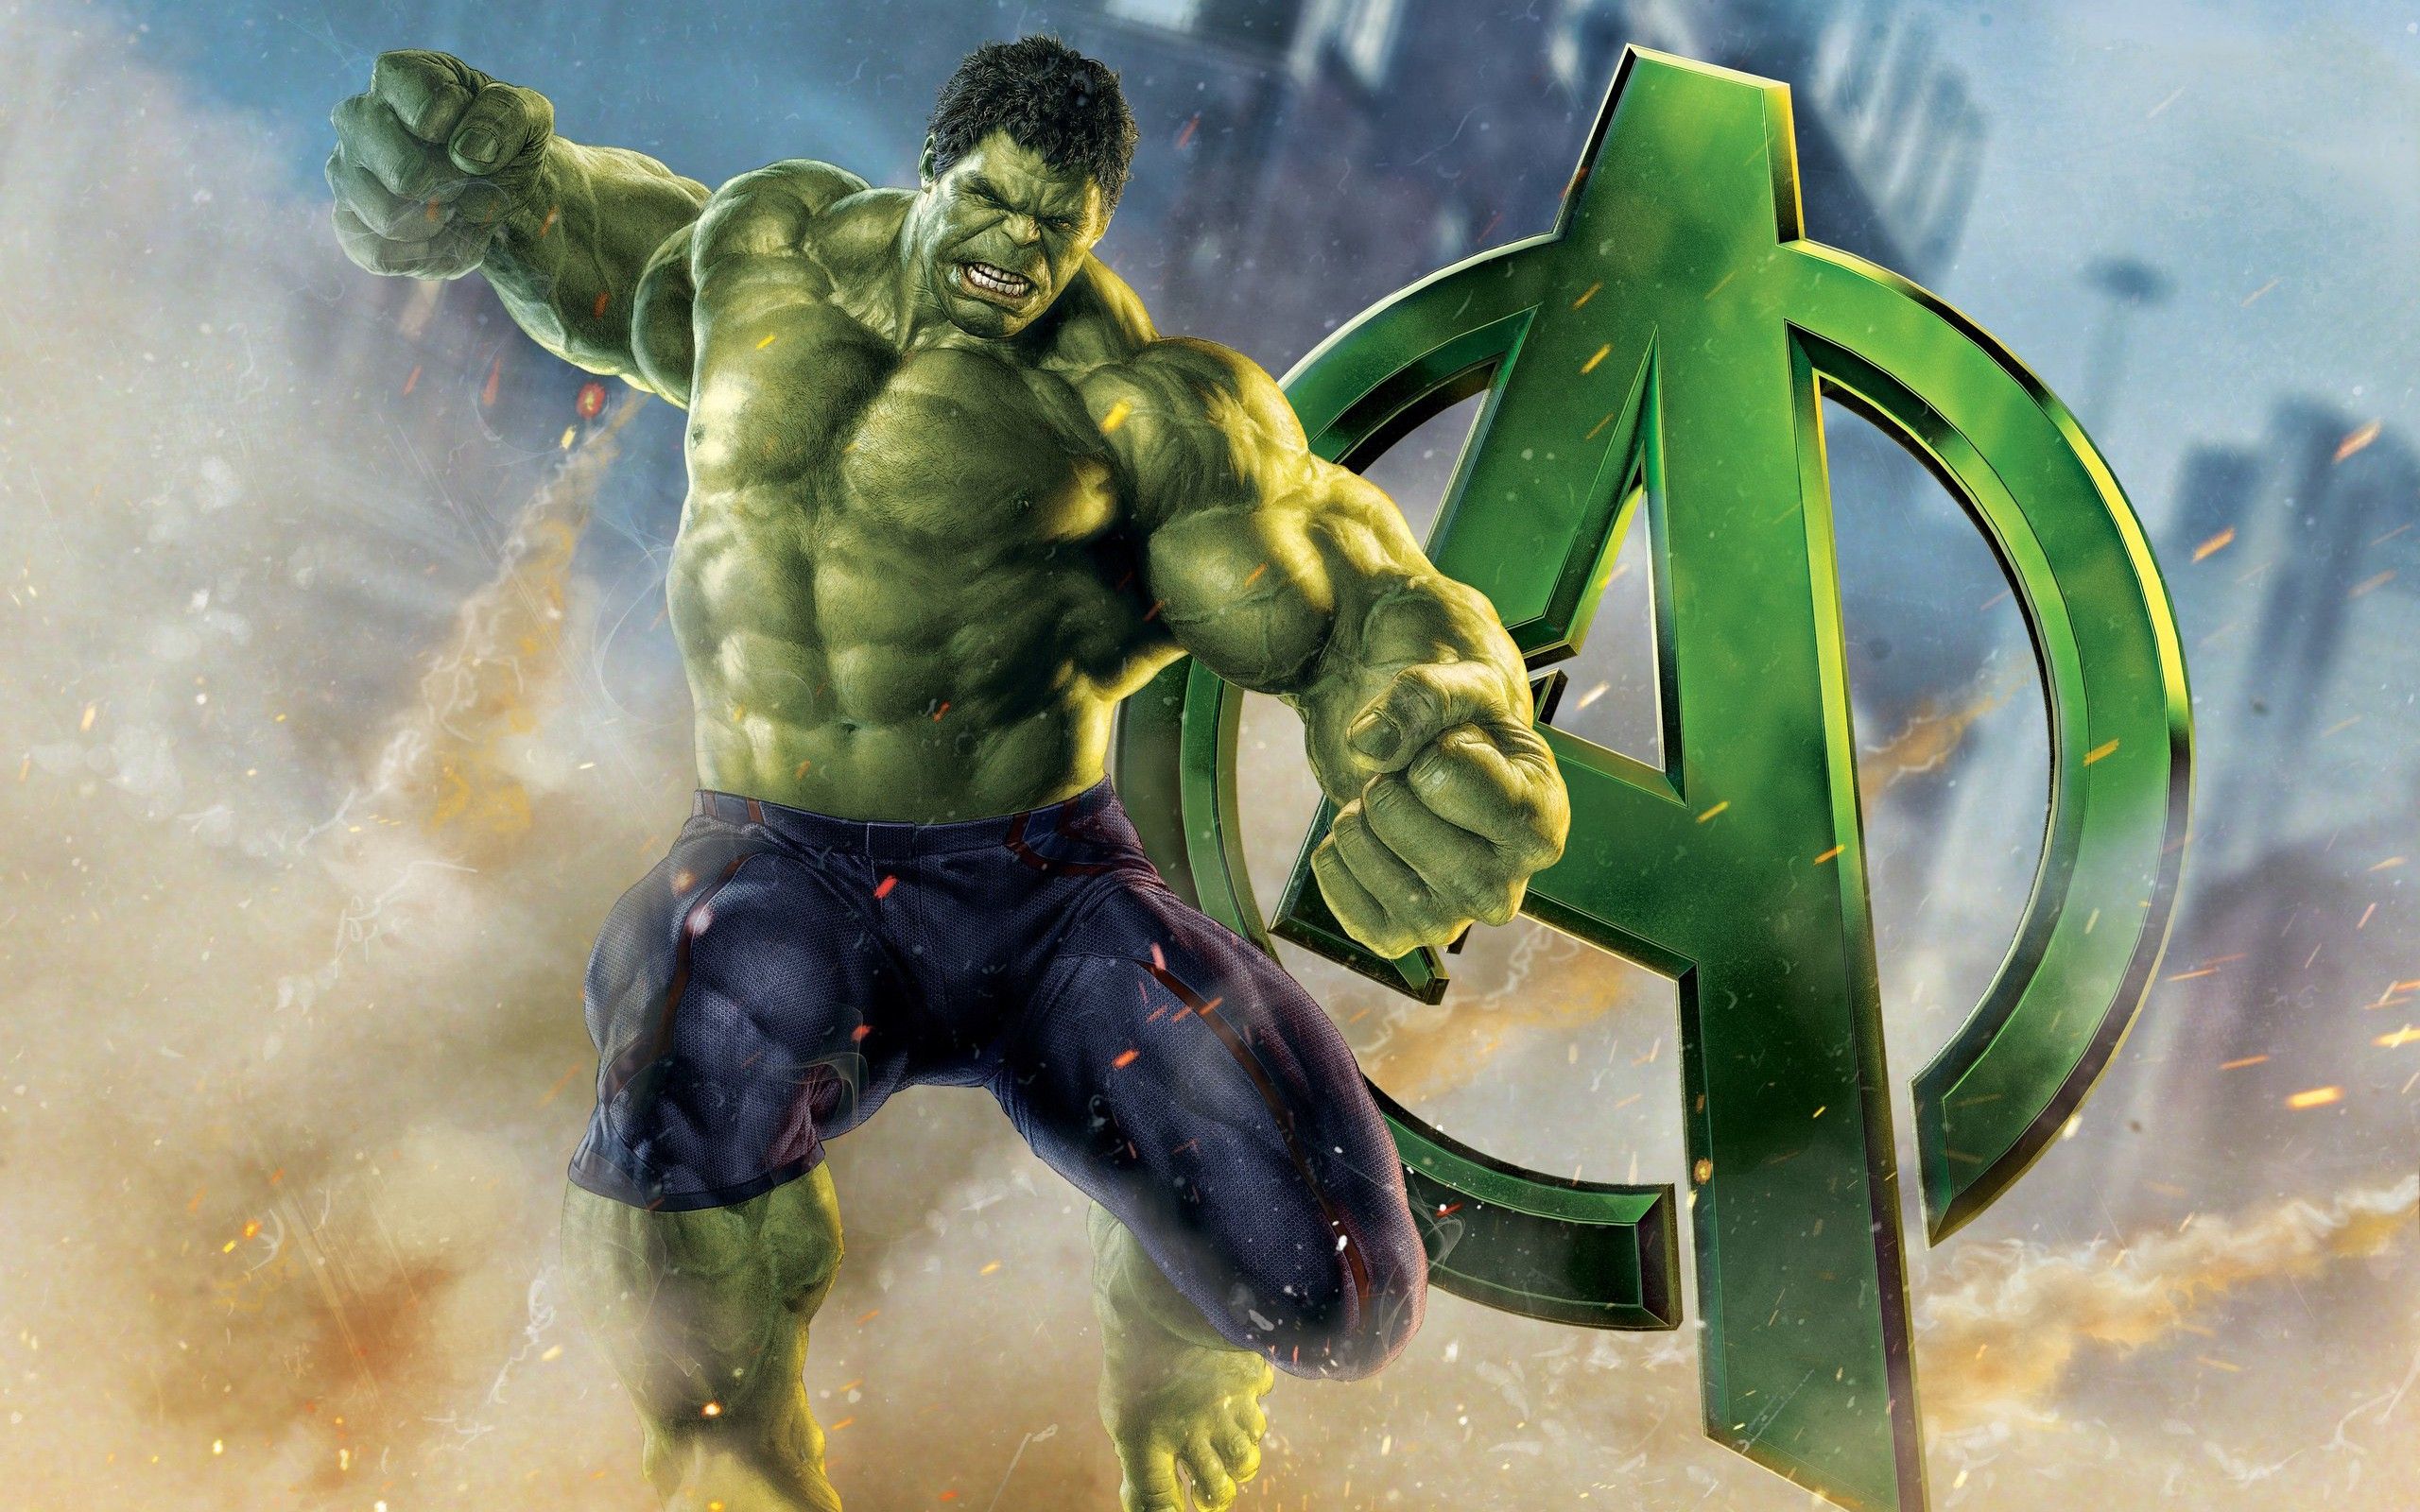 Hulk Image Download